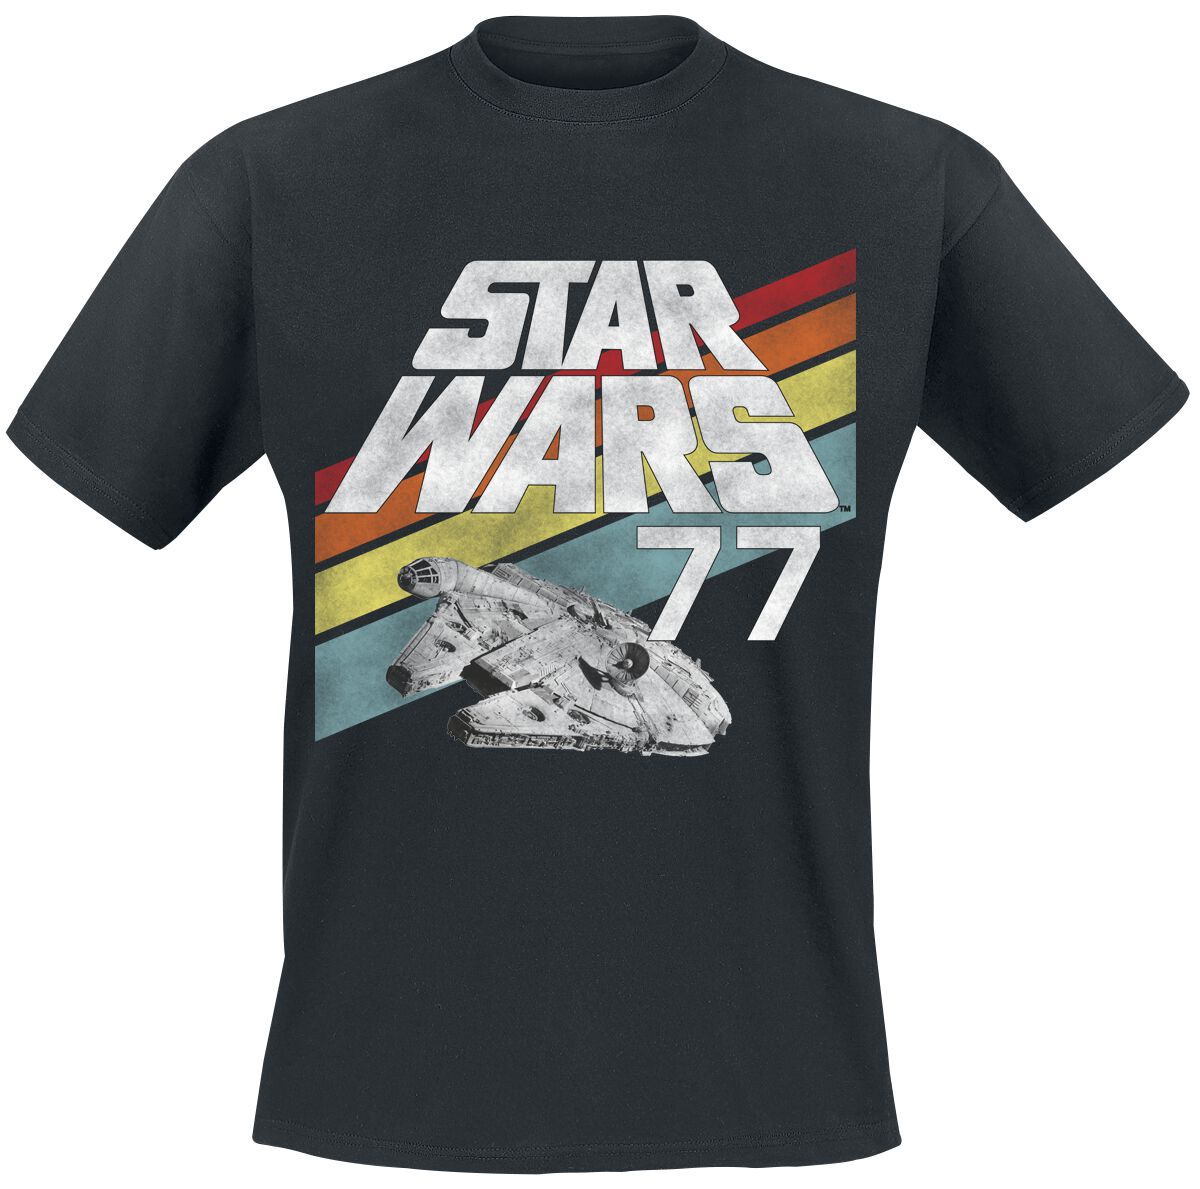 Star Wars T-Shirt - Star Wars - 77 - S bis XXL - für Männer - Größe S - schwarz  - EMP exklusives Merchandise!